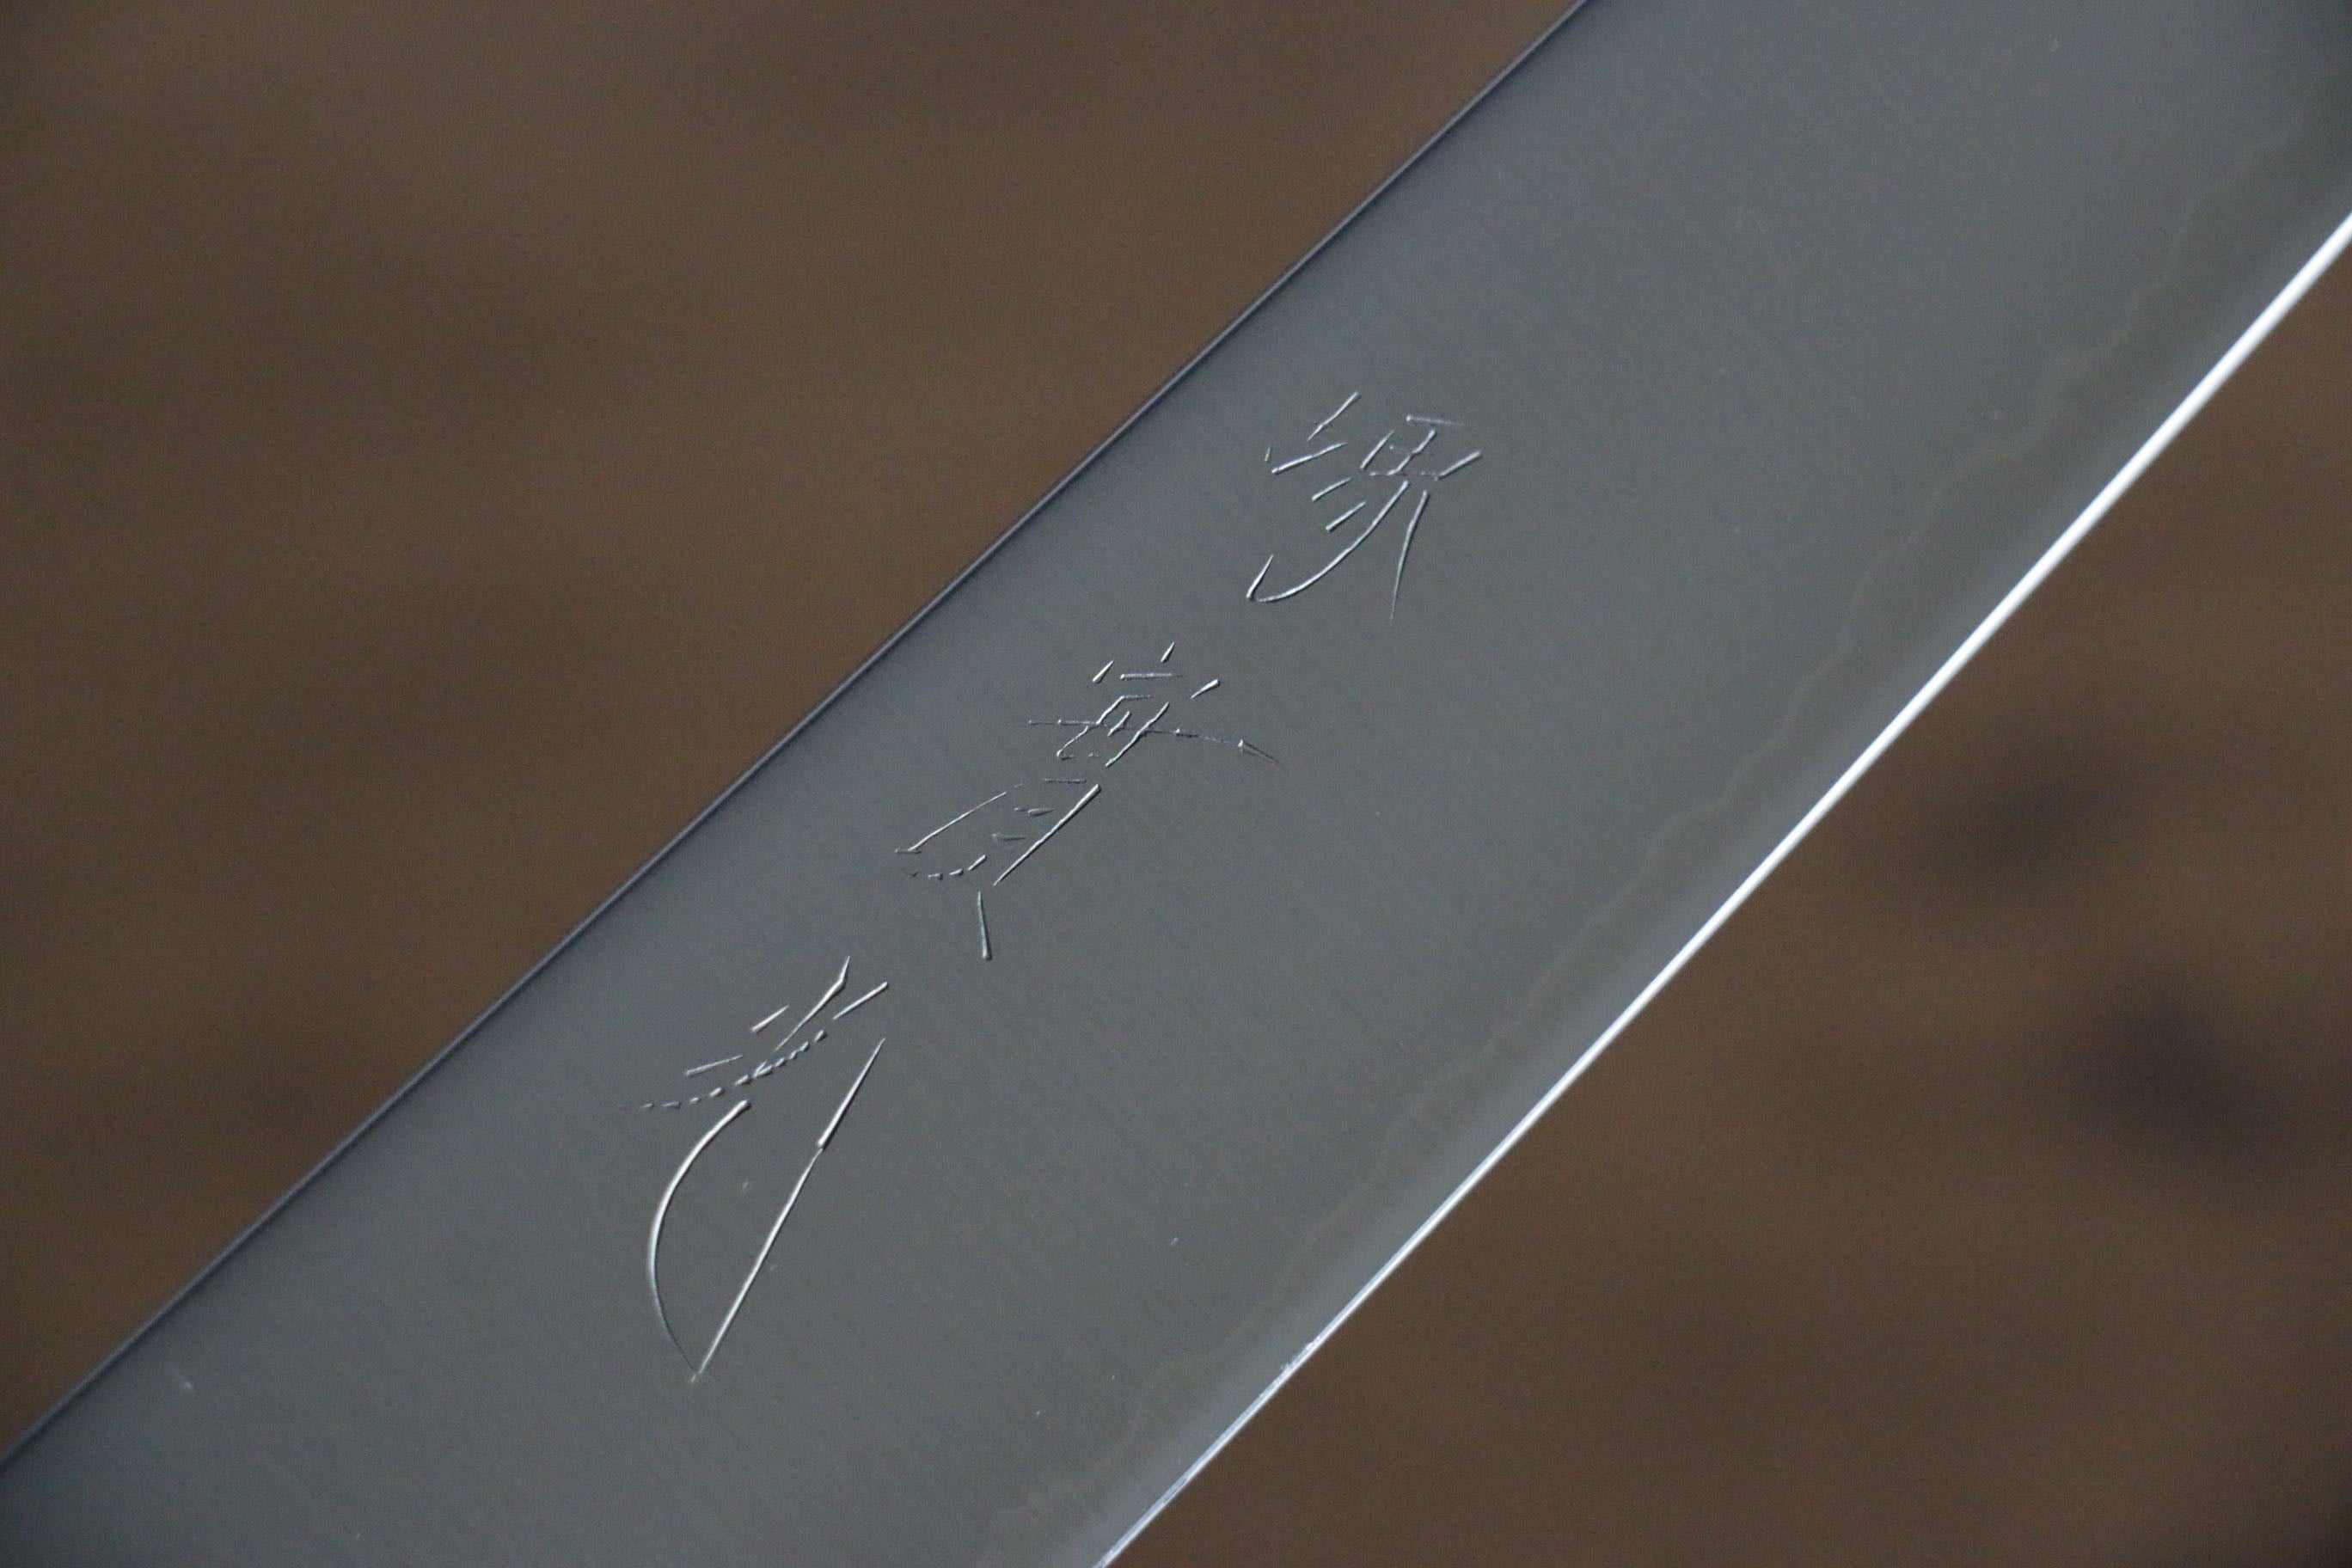 Jikko R2/SG2 Kiritsuke Sujihiki Japanese Knife 230mm Magnolia Handle - Japanny - Best Japanese Knife